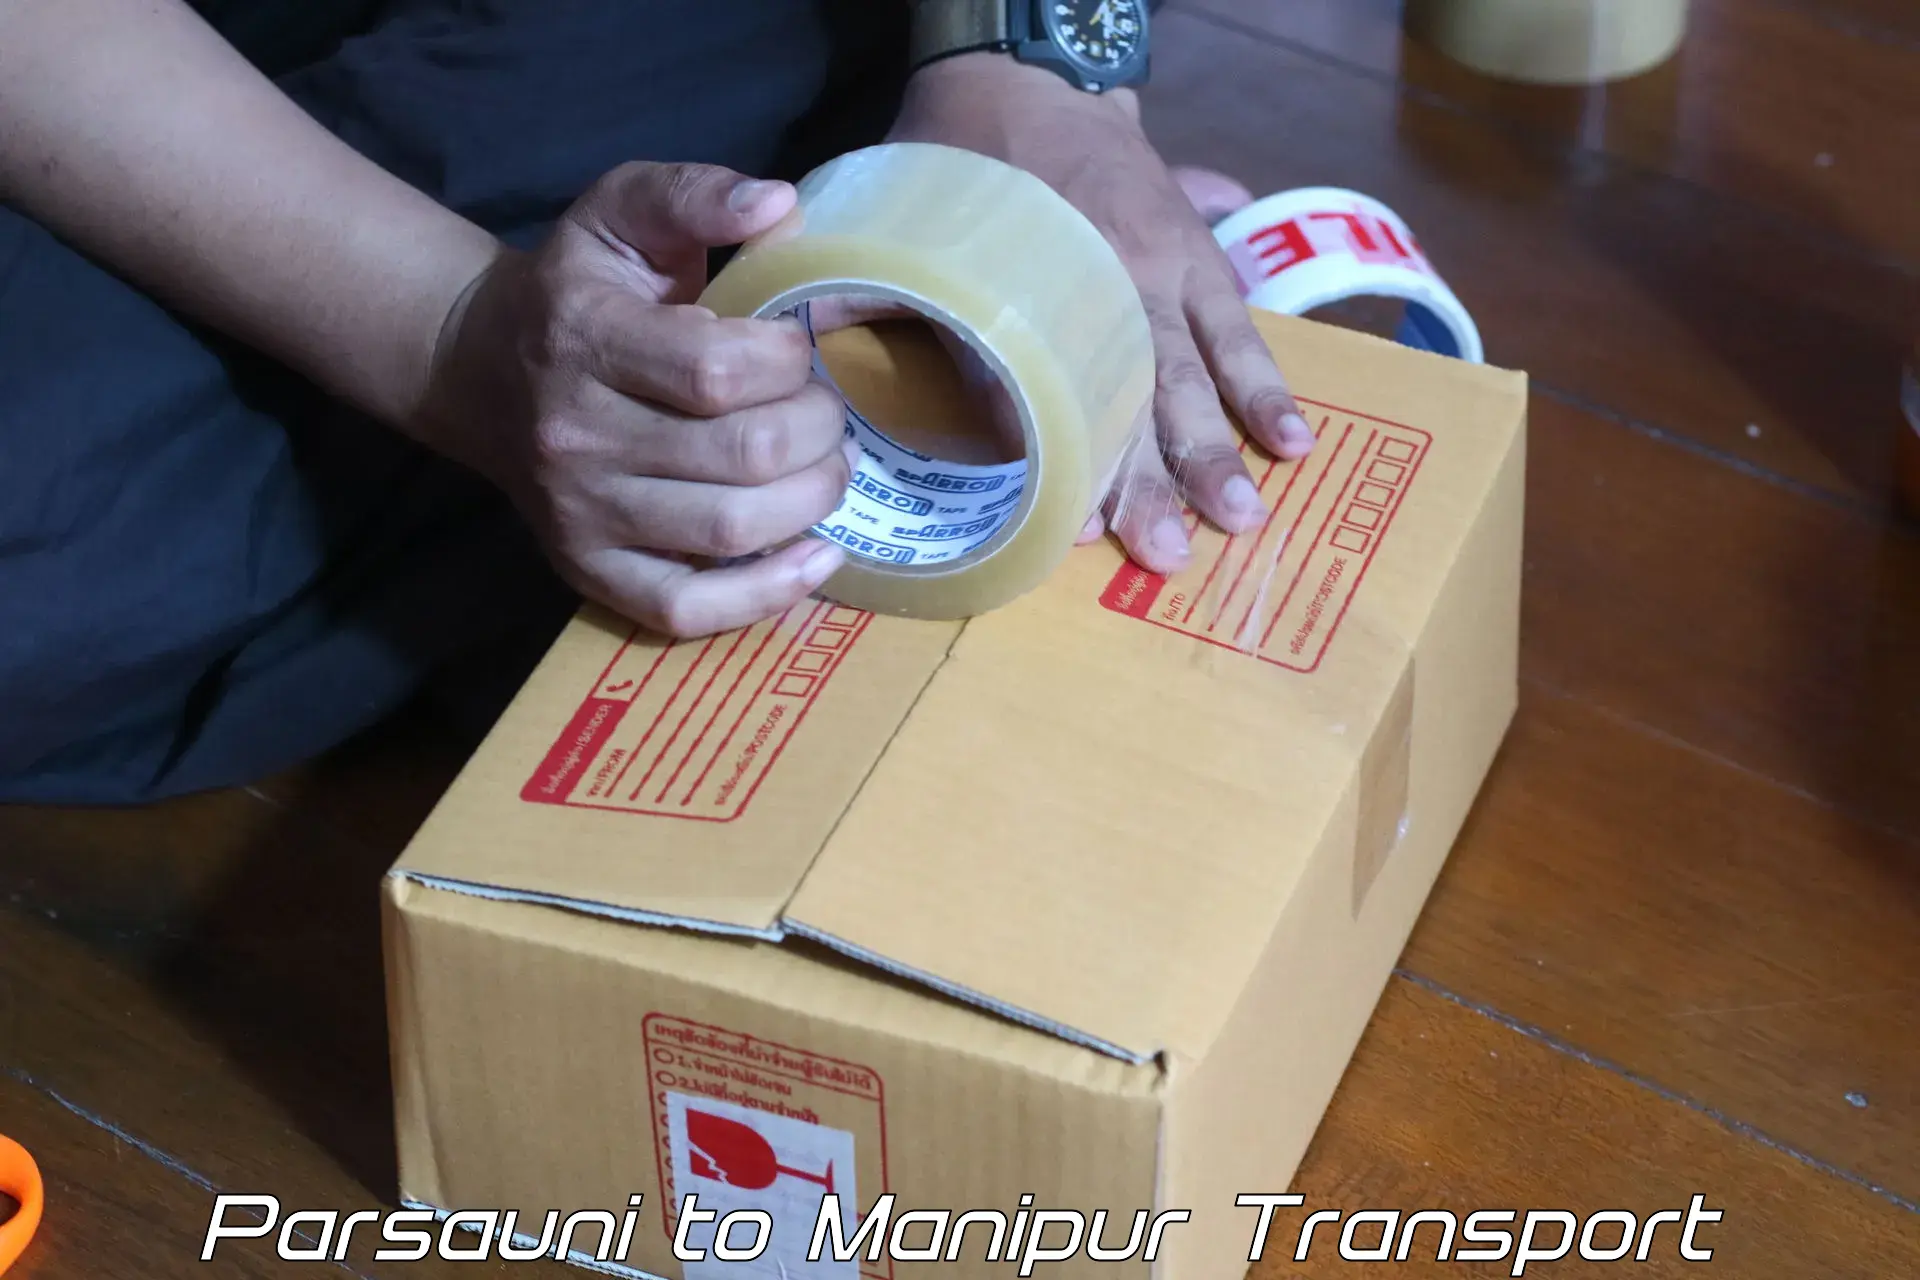 Furniture transport service Parsauni to Moirang